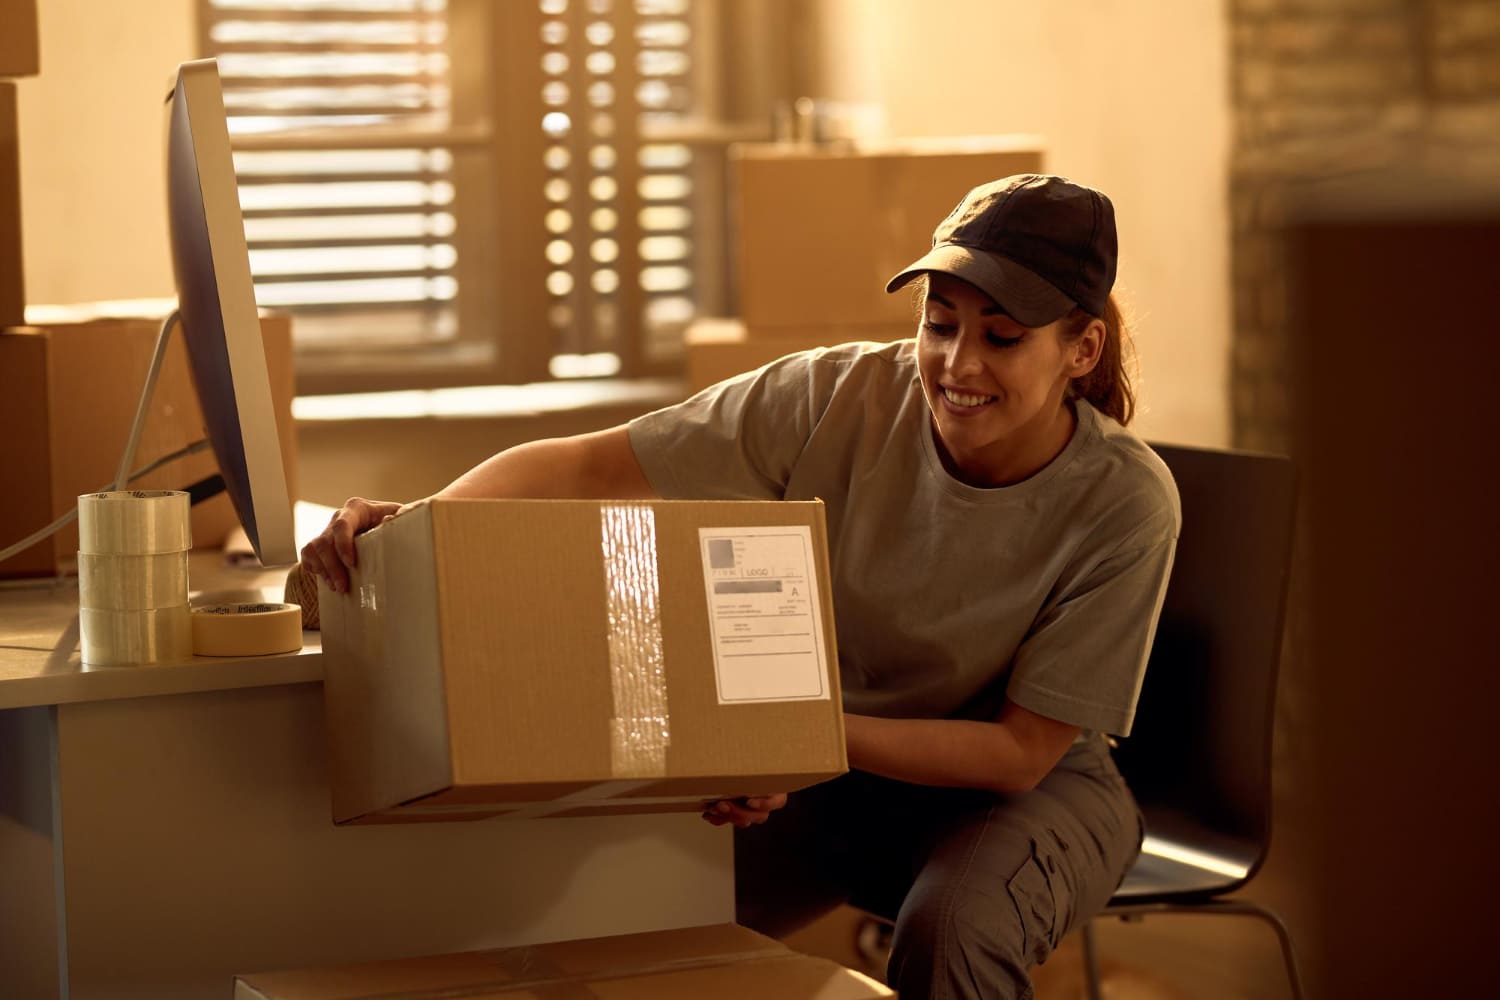 imagem de uma mulher separando caixas para entrega de e-commerce